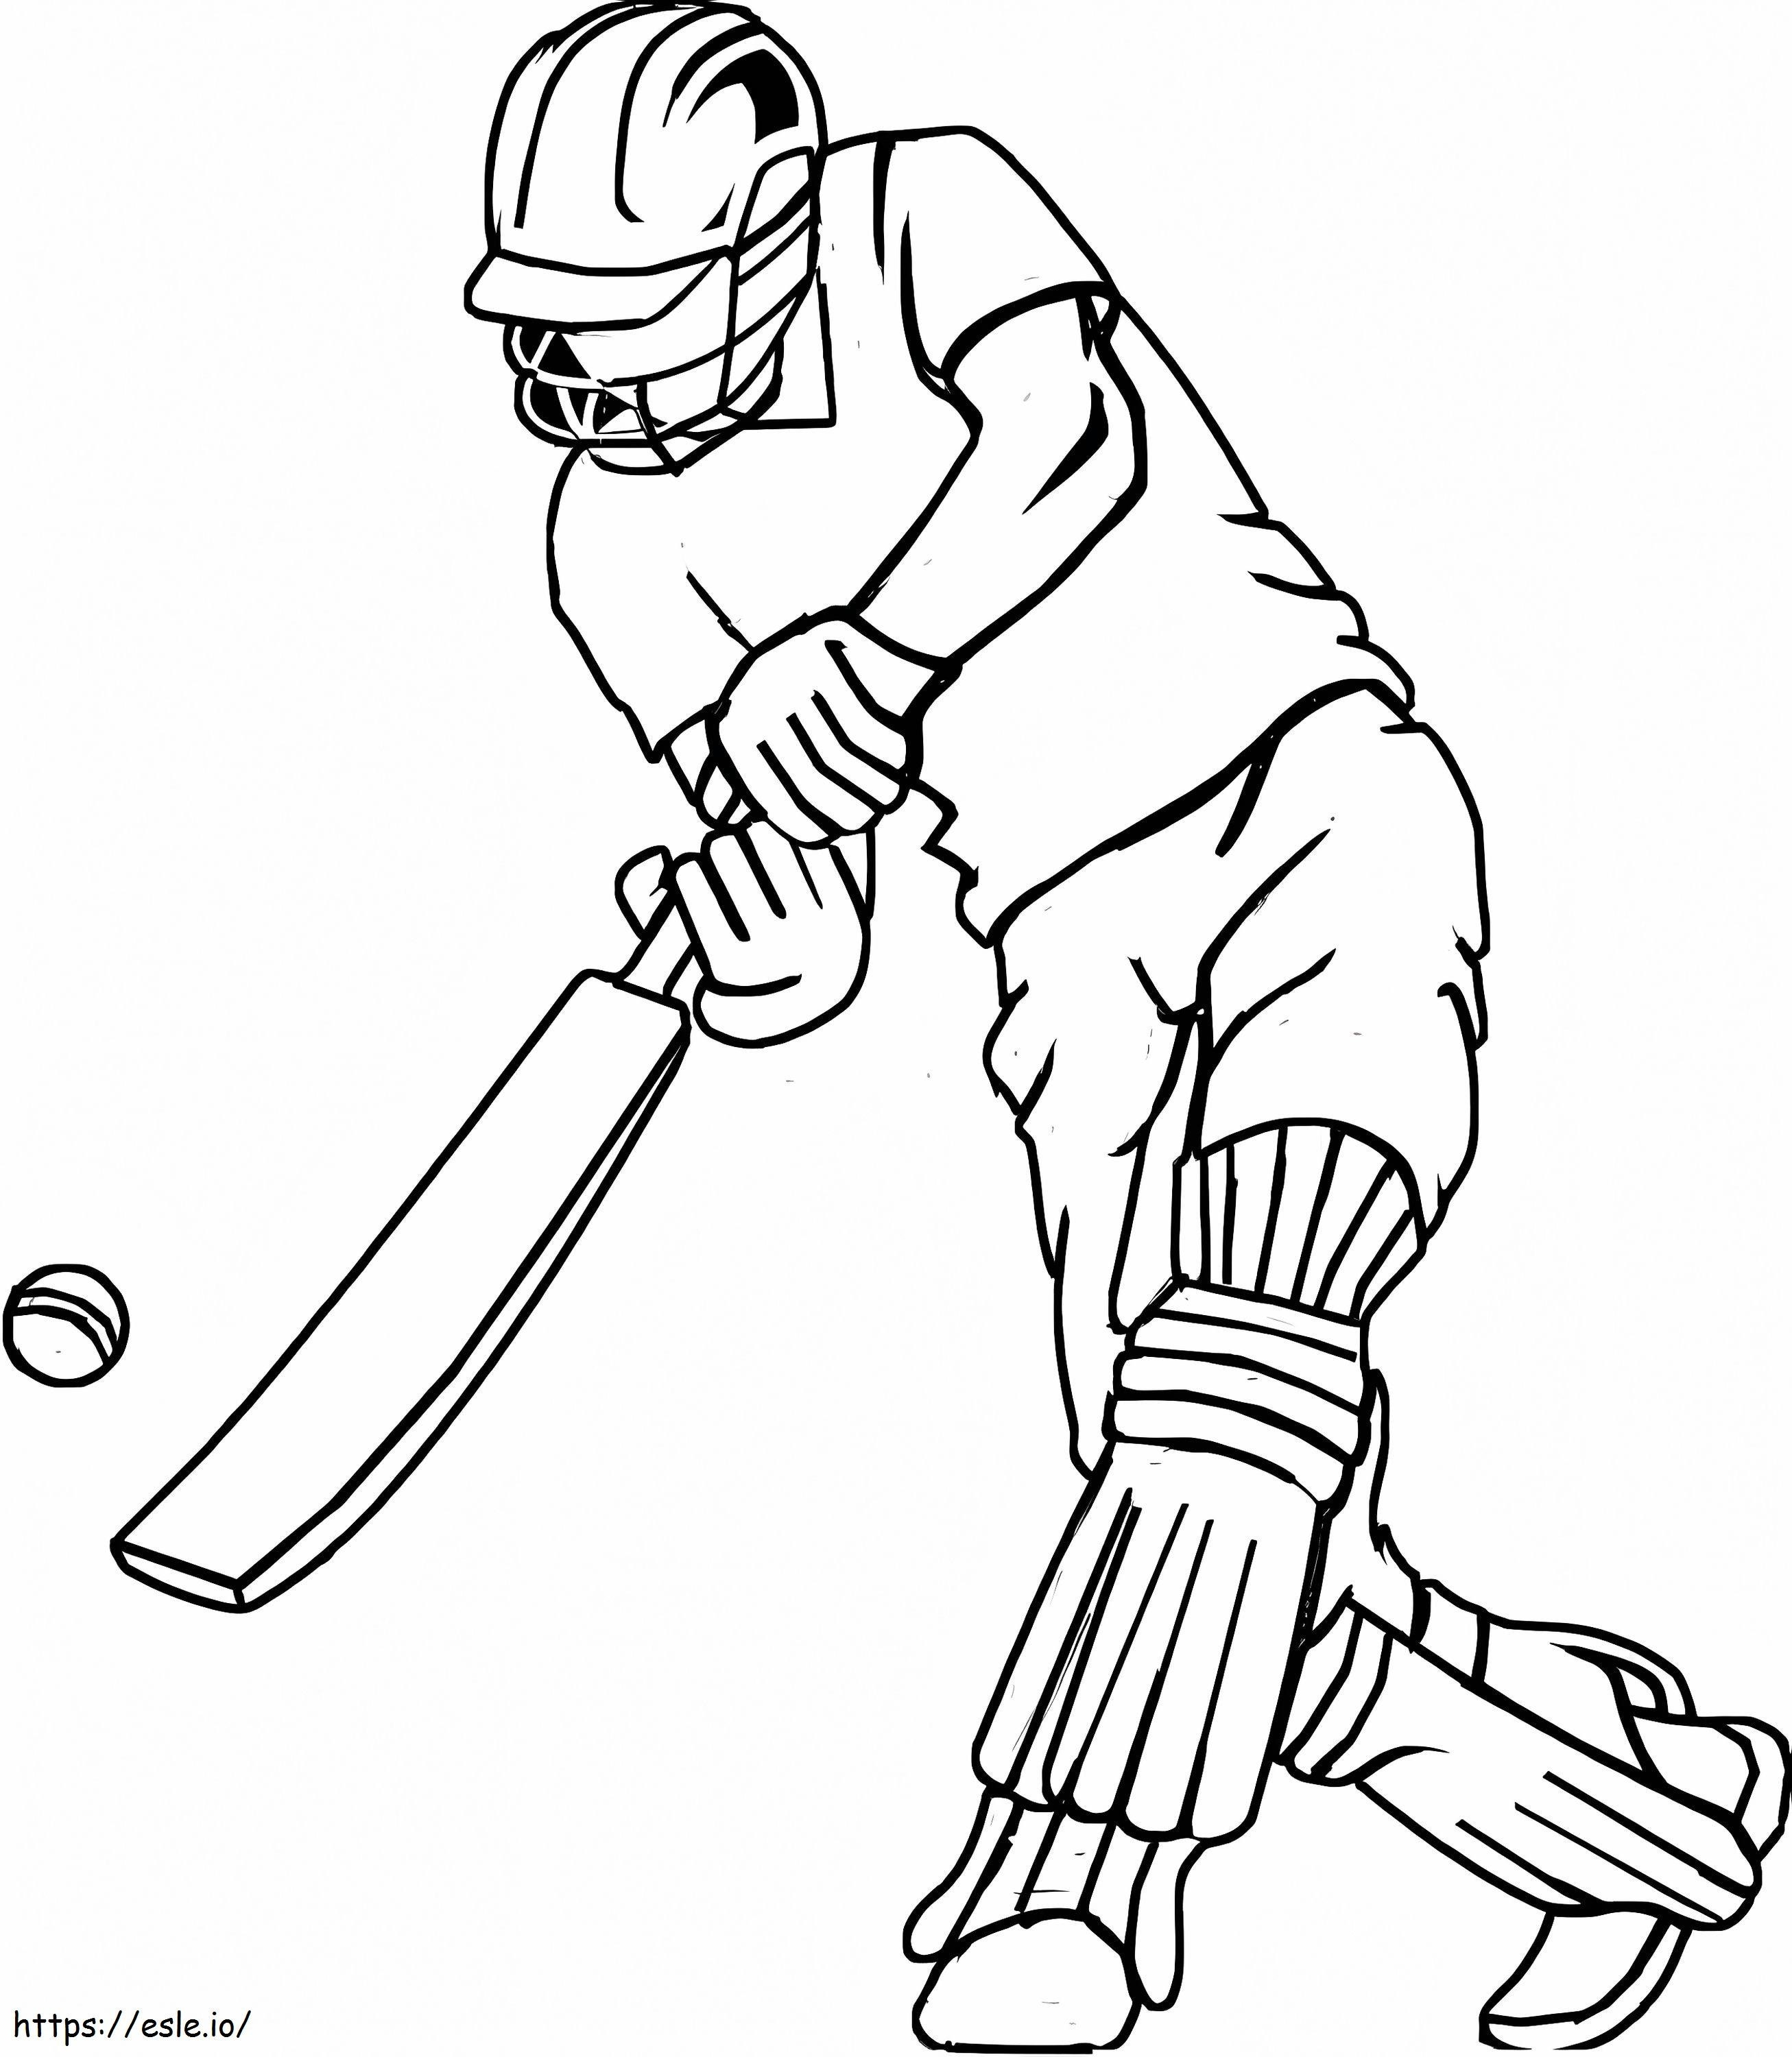 Giocatore di cricket di base da colorare